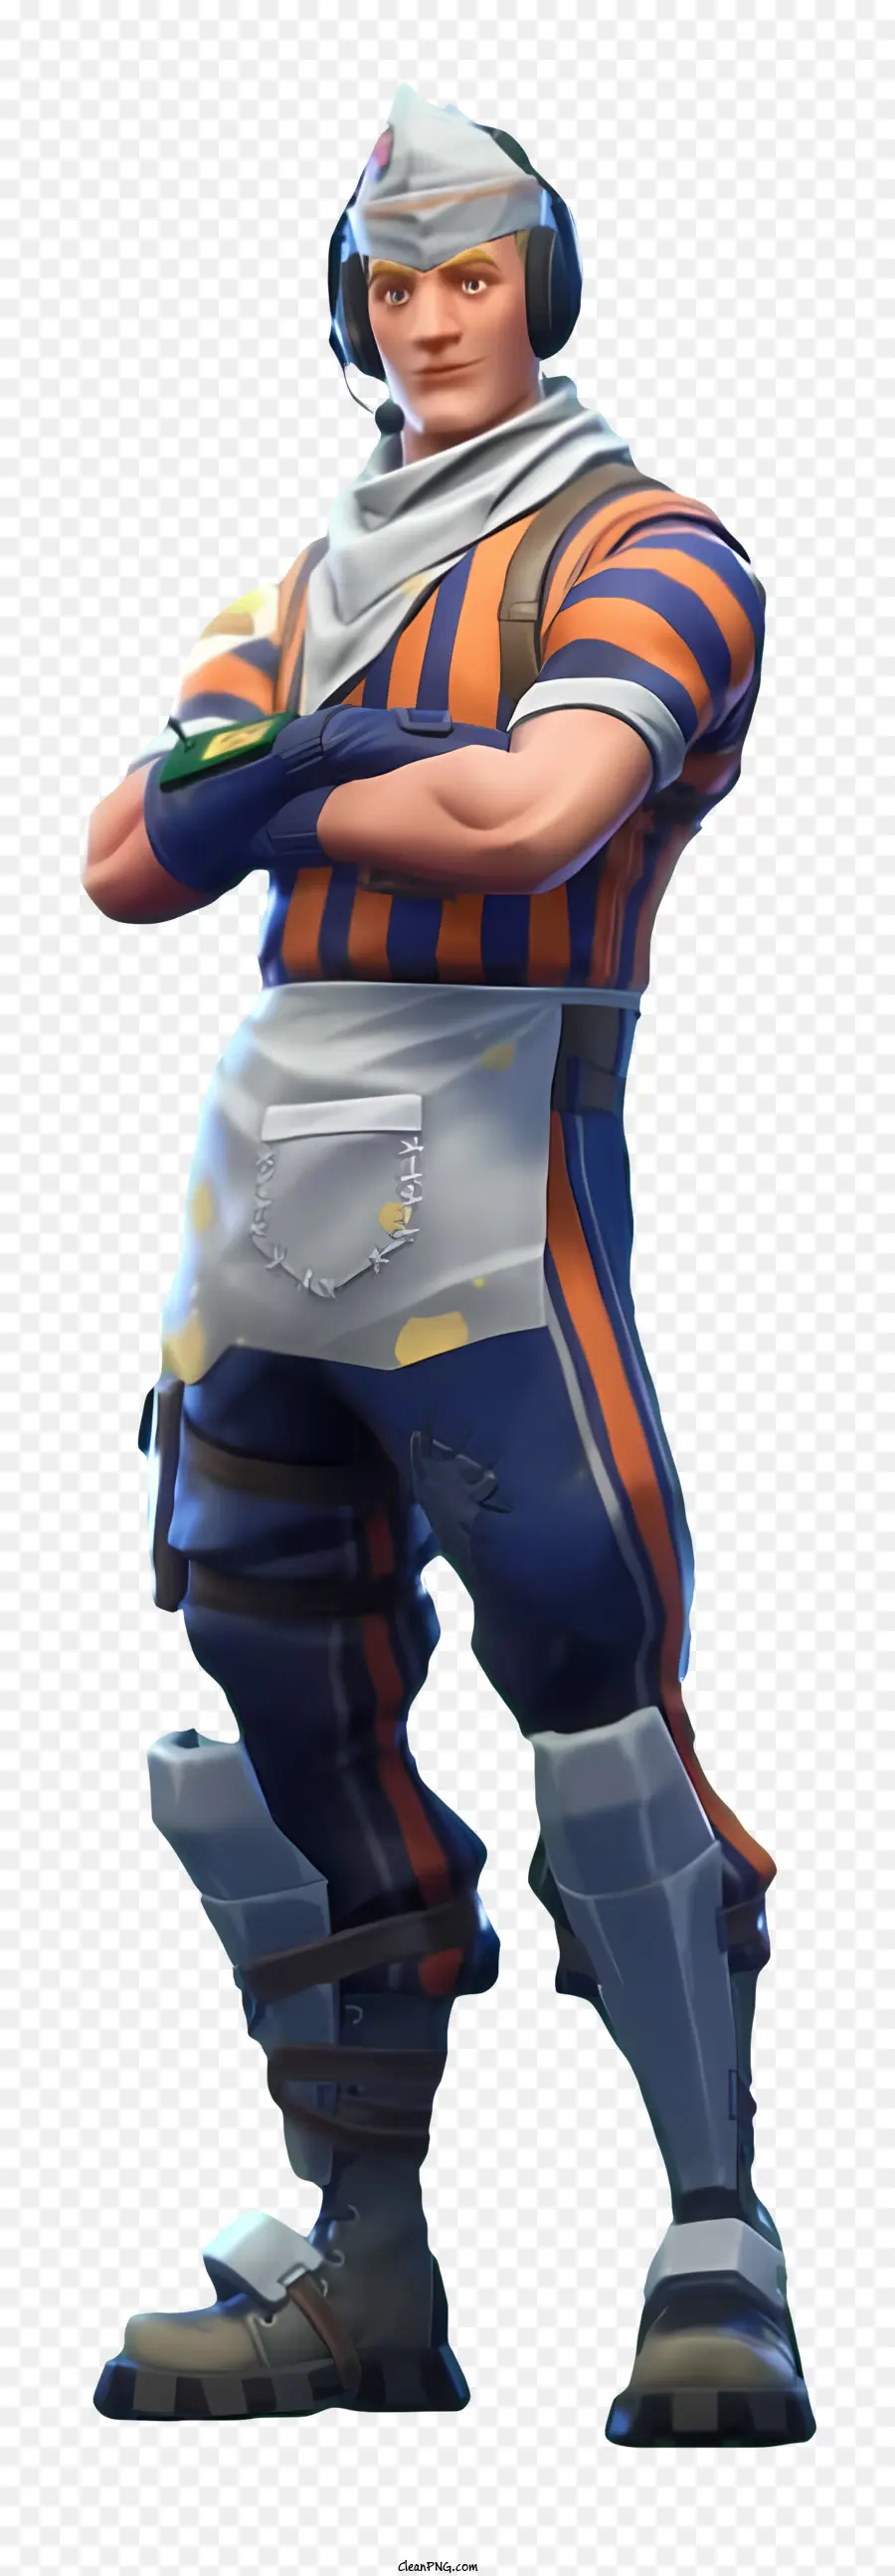 Fortnite - Mann im blauen und orangefarbenen Outfit mit Accessoires